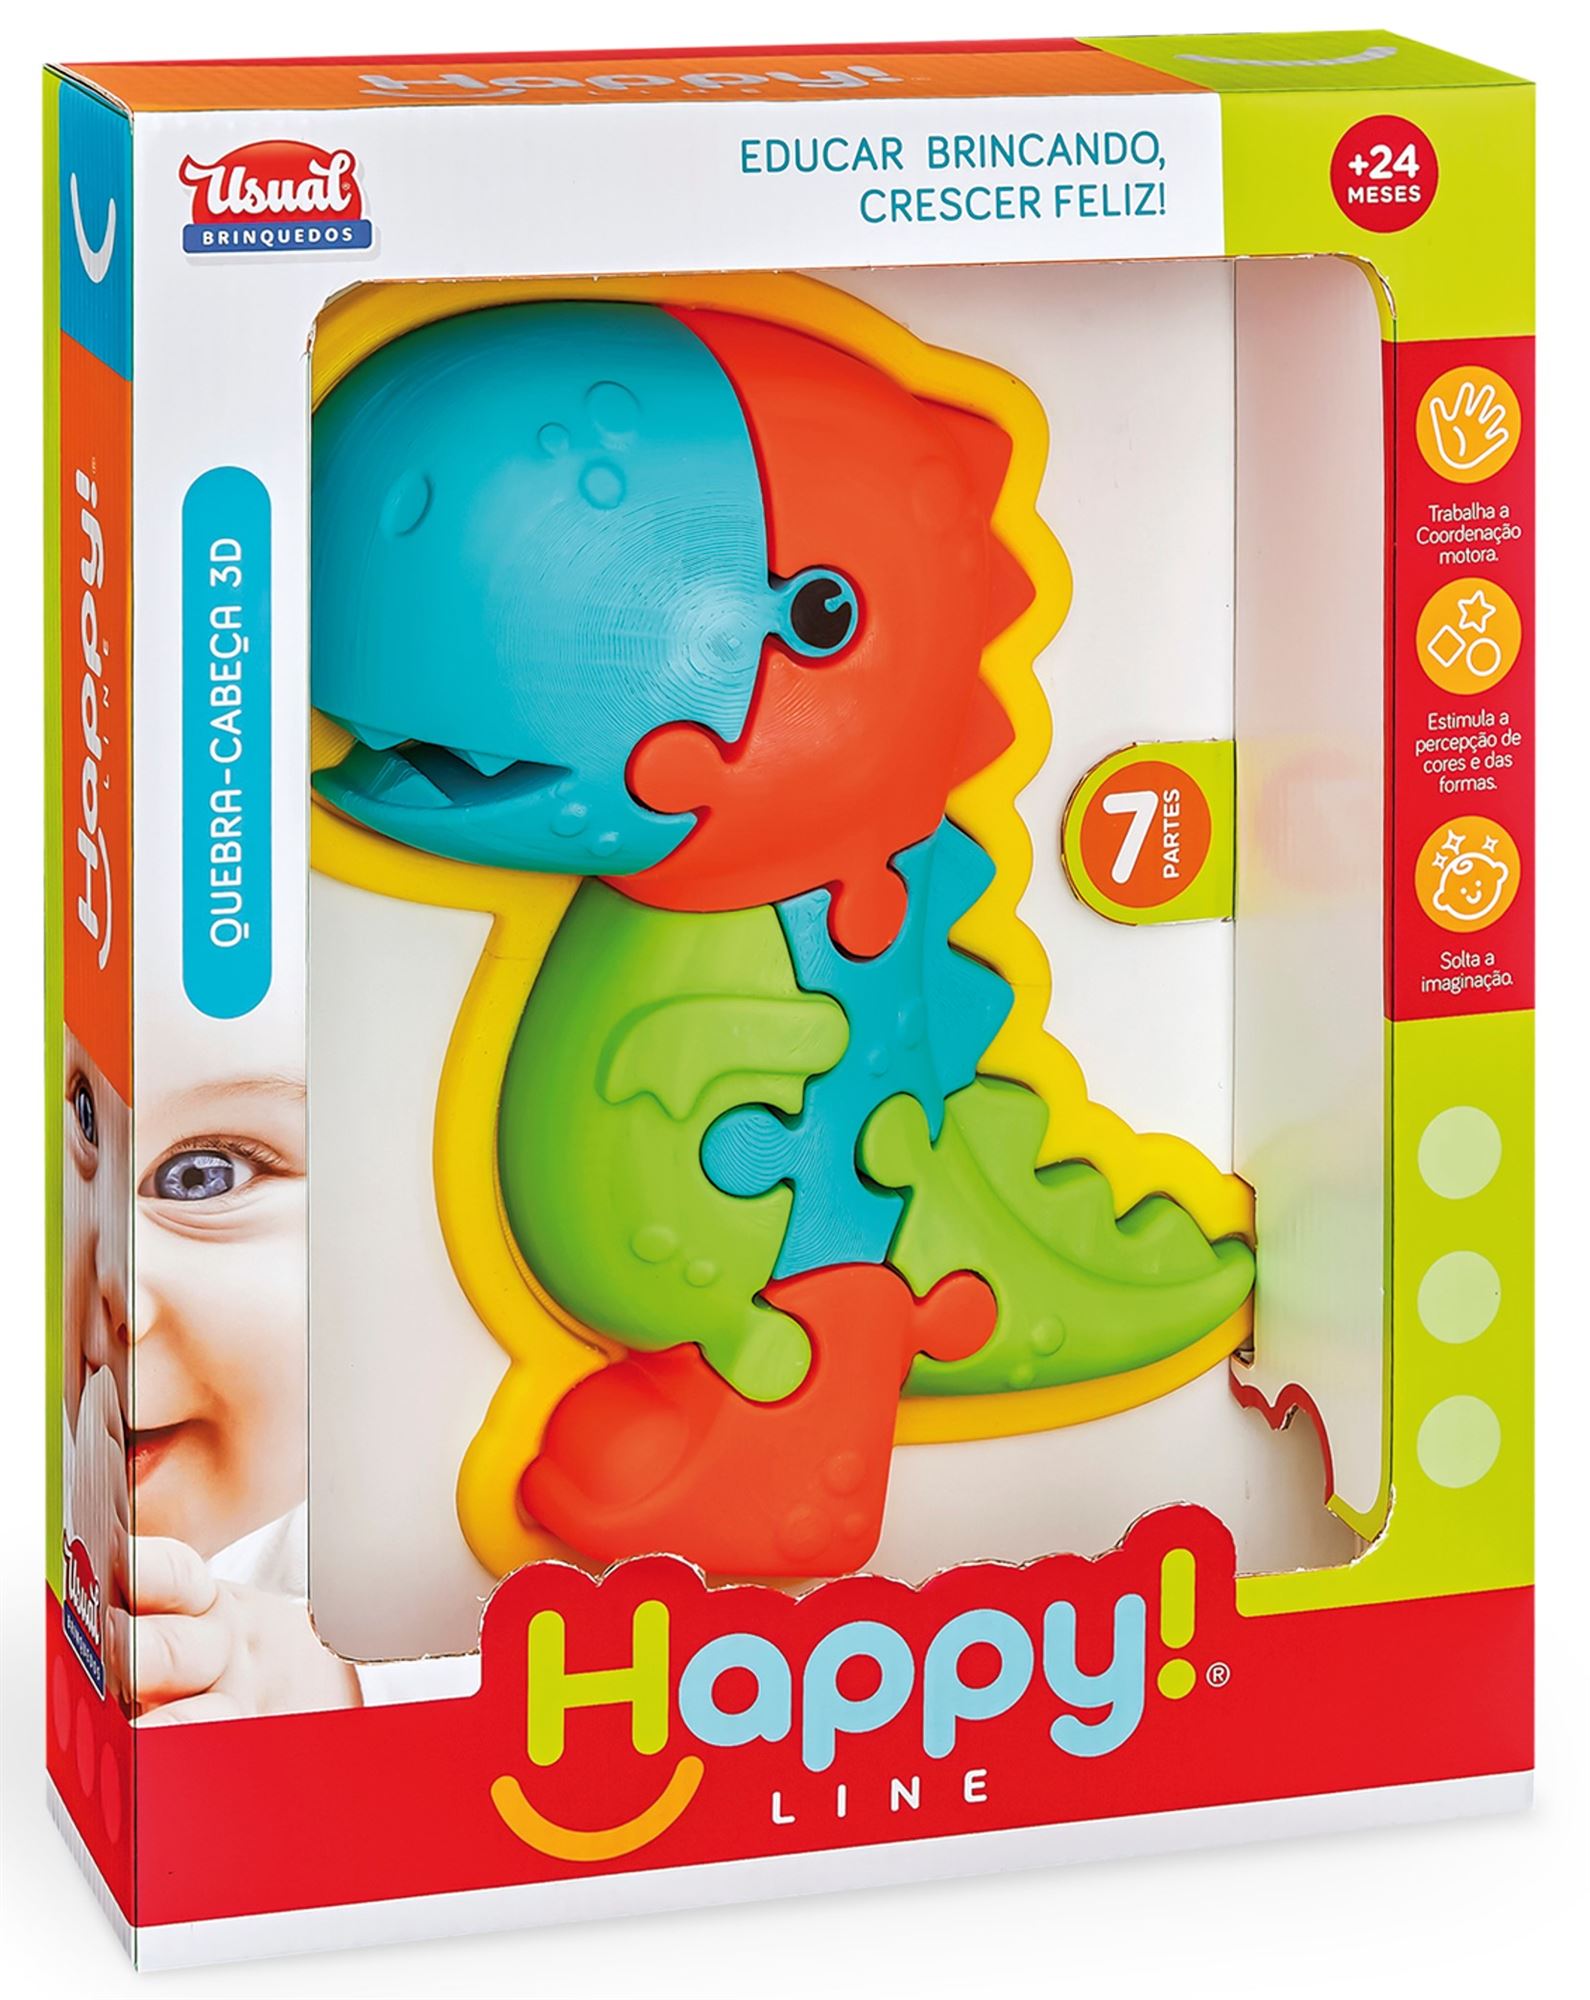 Brinquedos - Be Happy Brinquedos